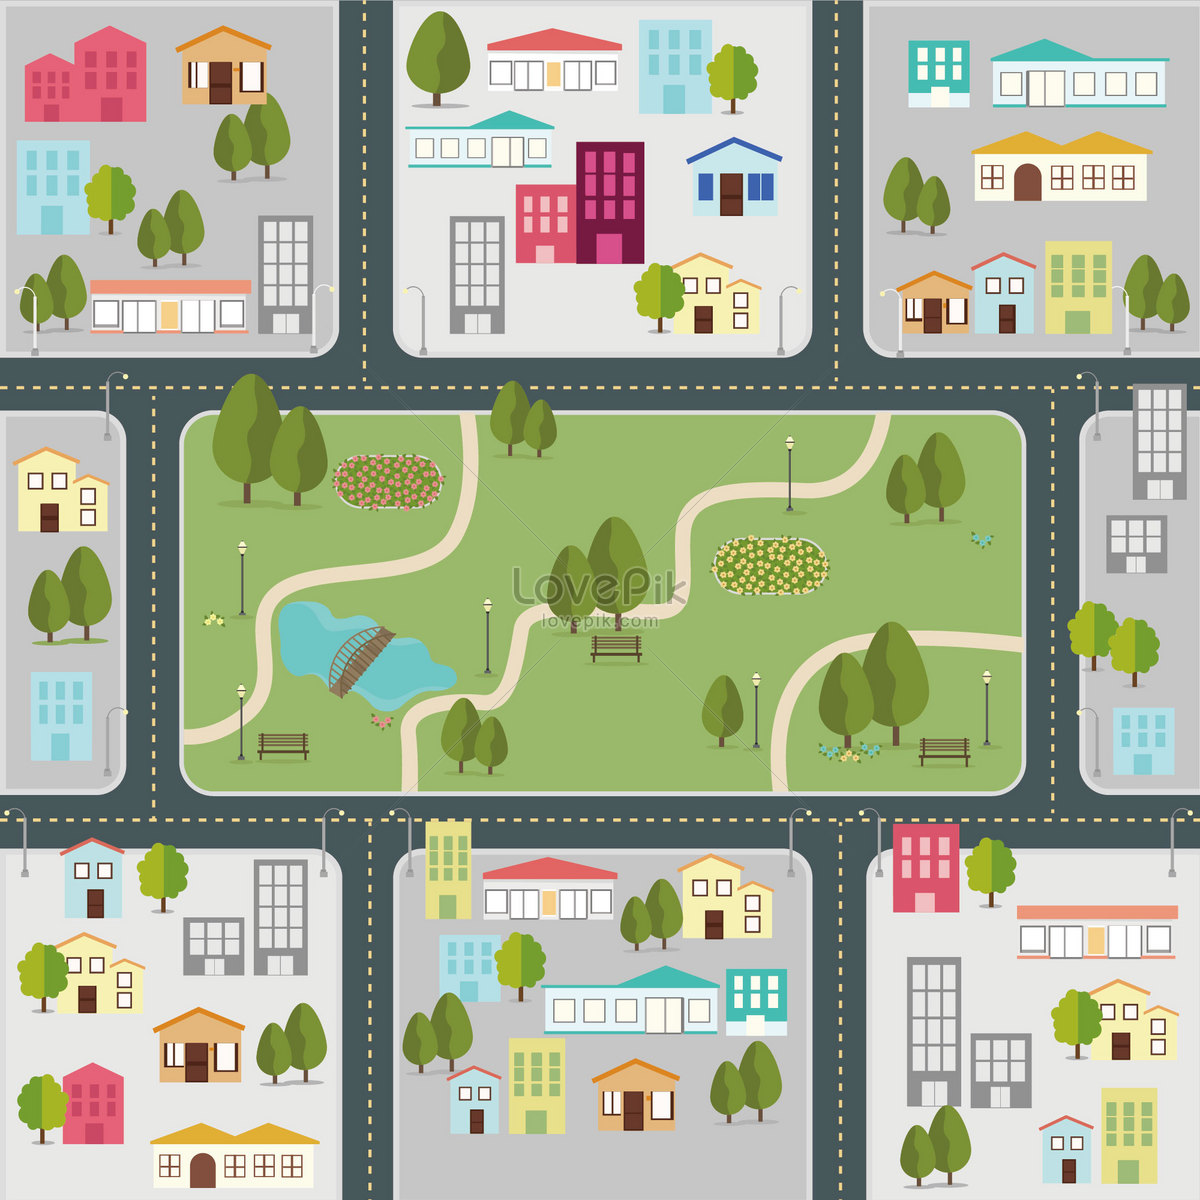 Покажи карта маленькая. Схематичная карта города для детей. Иллюстрированные карты городов. План города для детей. Карта города иллюстрация.